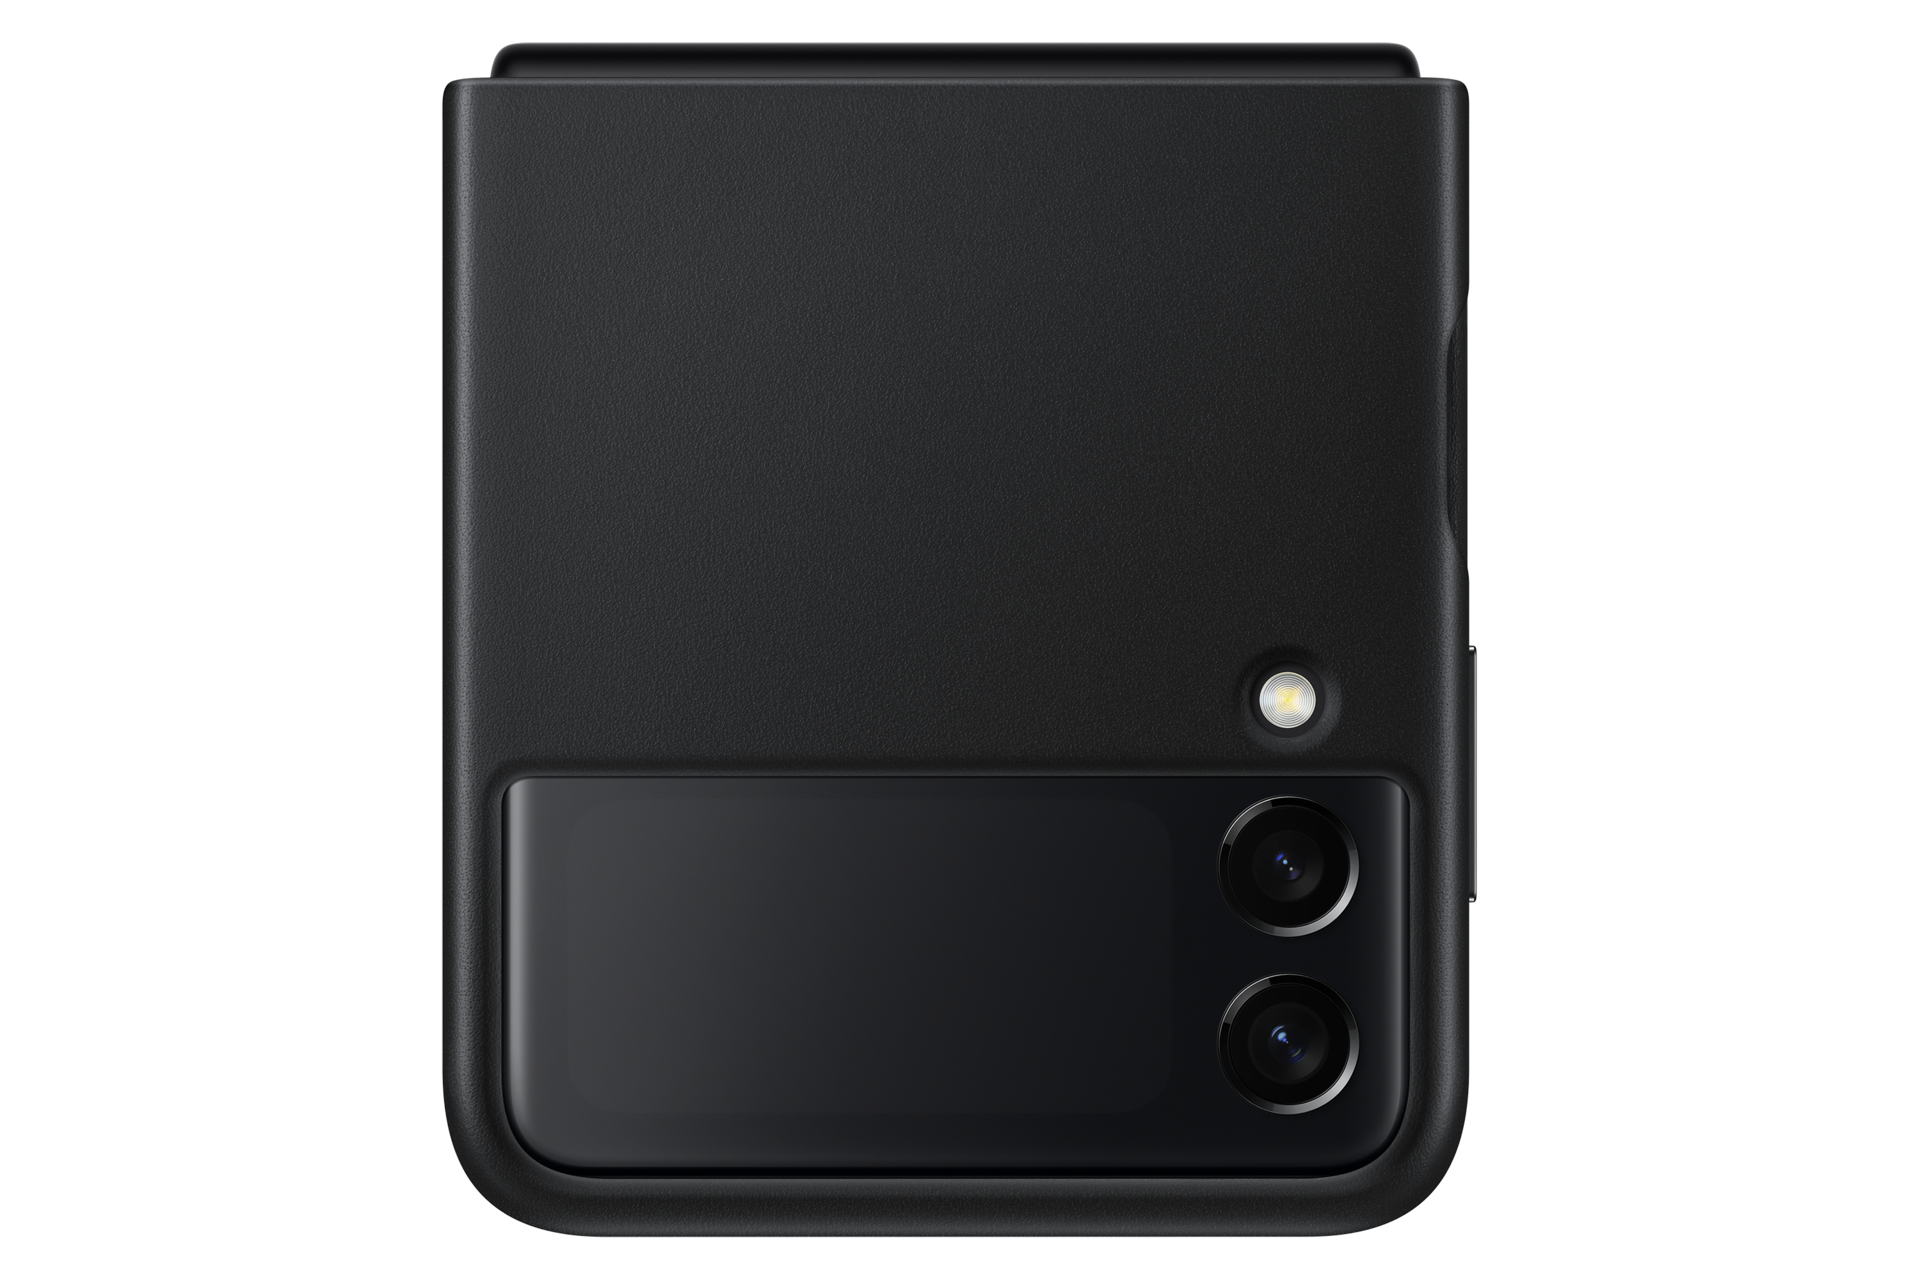 Samsung Galaxy Z Flip5 Flap Eco-Leather Case in Black(EF-VF731PBEGUS)